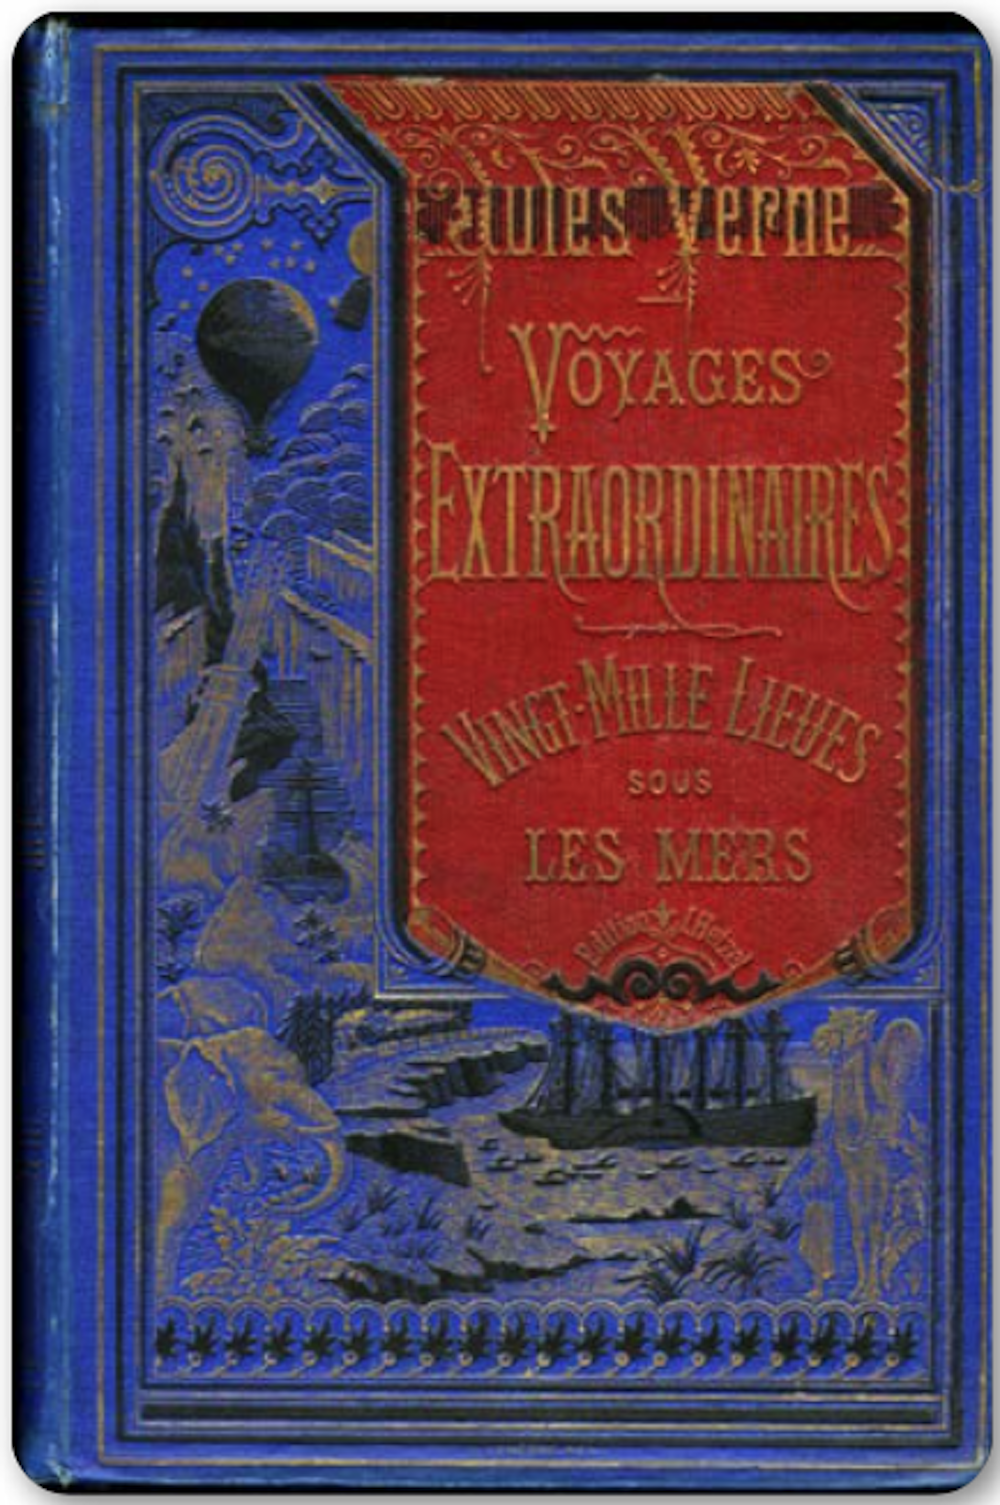 Vingt Mille Lieues sous les mers, cartonnage à la bannière, vers 1875 Collection des Bibliothèques d’Amiens Métropole © Bibliothèques d’Amiens Métropole